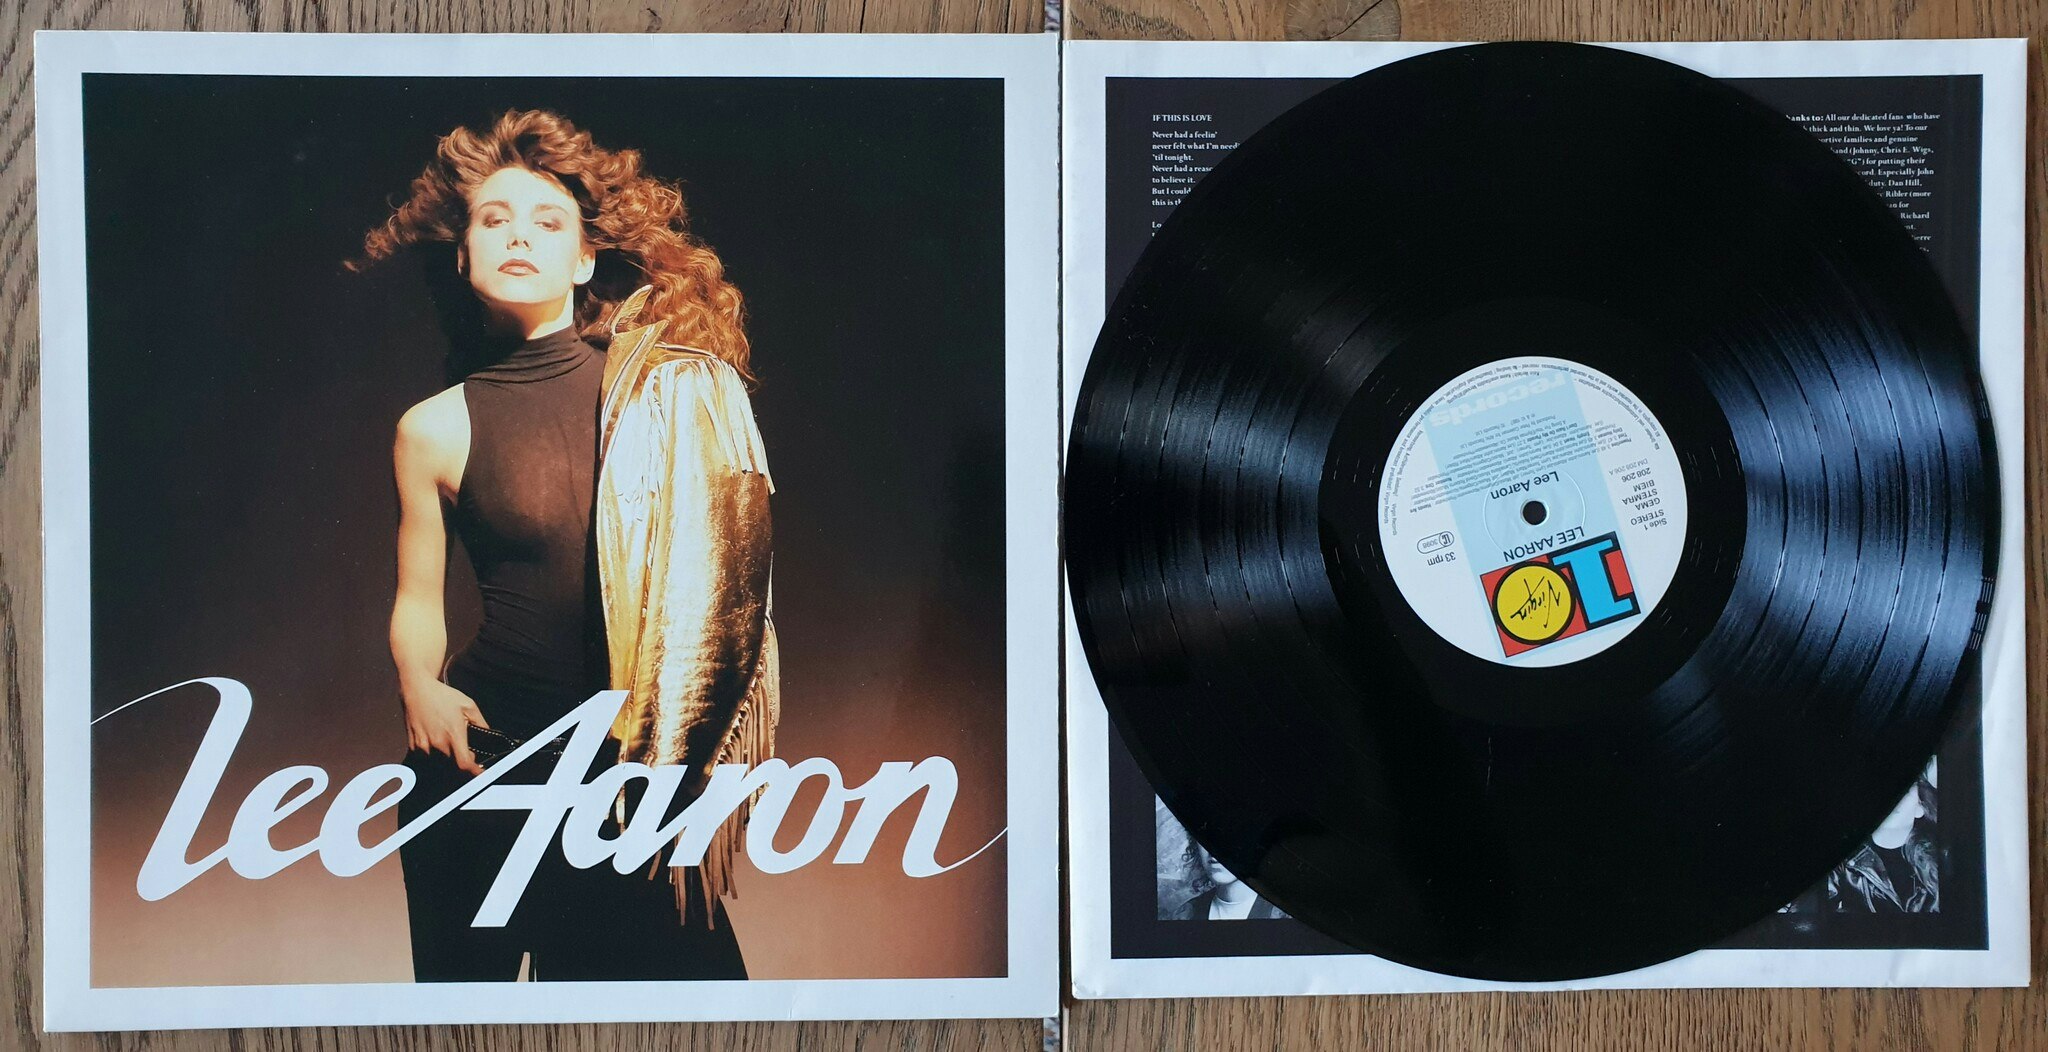 Lee Aaron, Lee Aaron. Vinyl LP